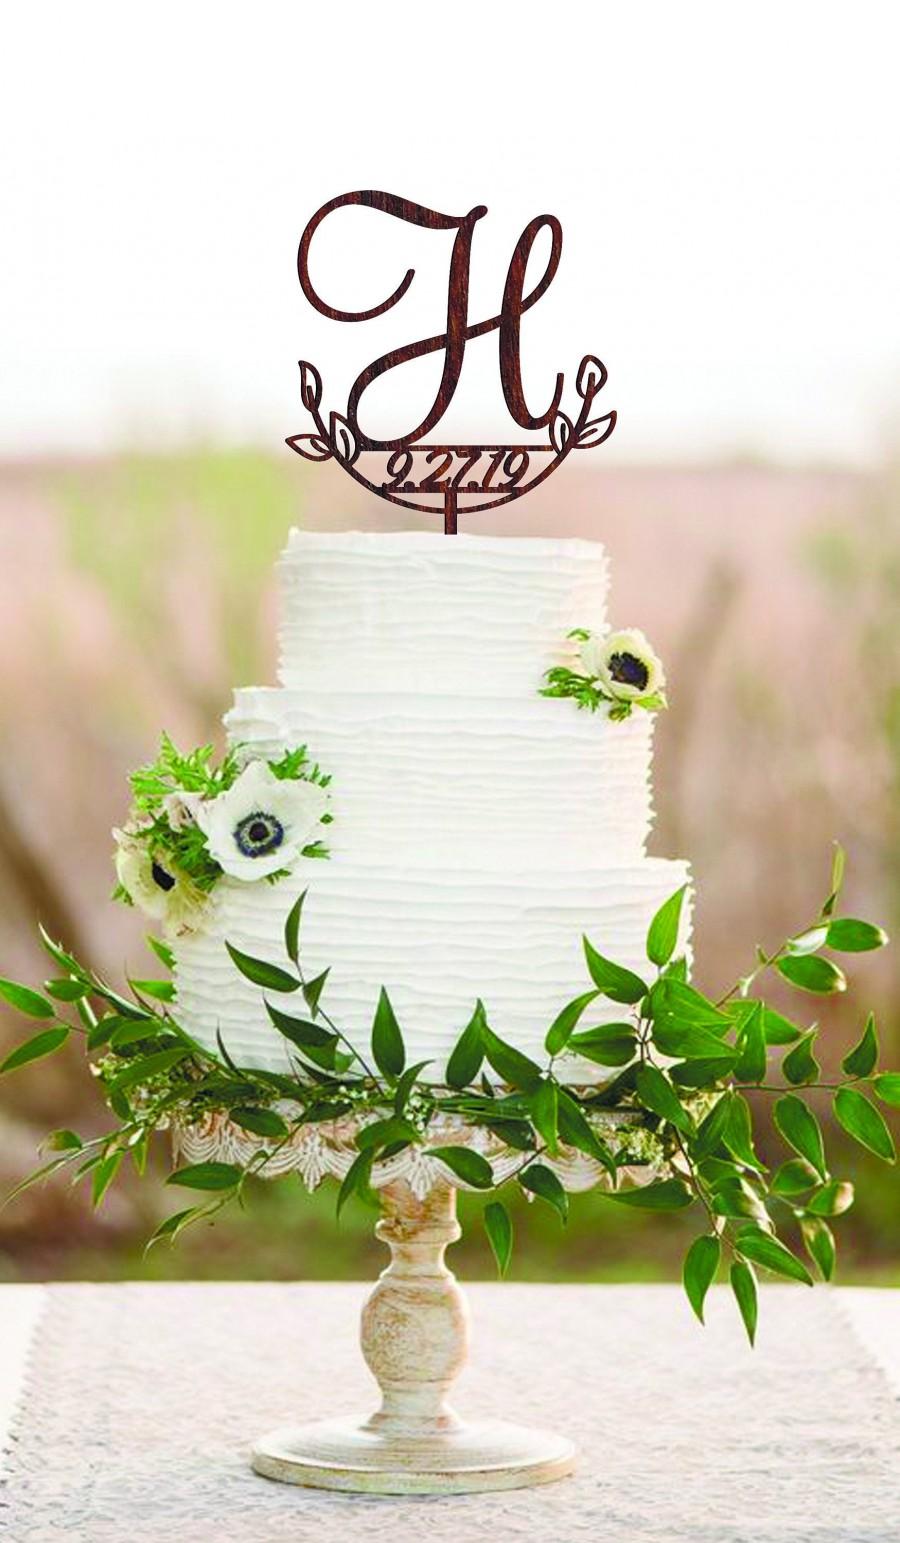 Свадьба - H cake topper date Wedding cake topper H Cake toppers for wedding Initial cake topper Wood monogram cake topper Rustic cake topper wedding H